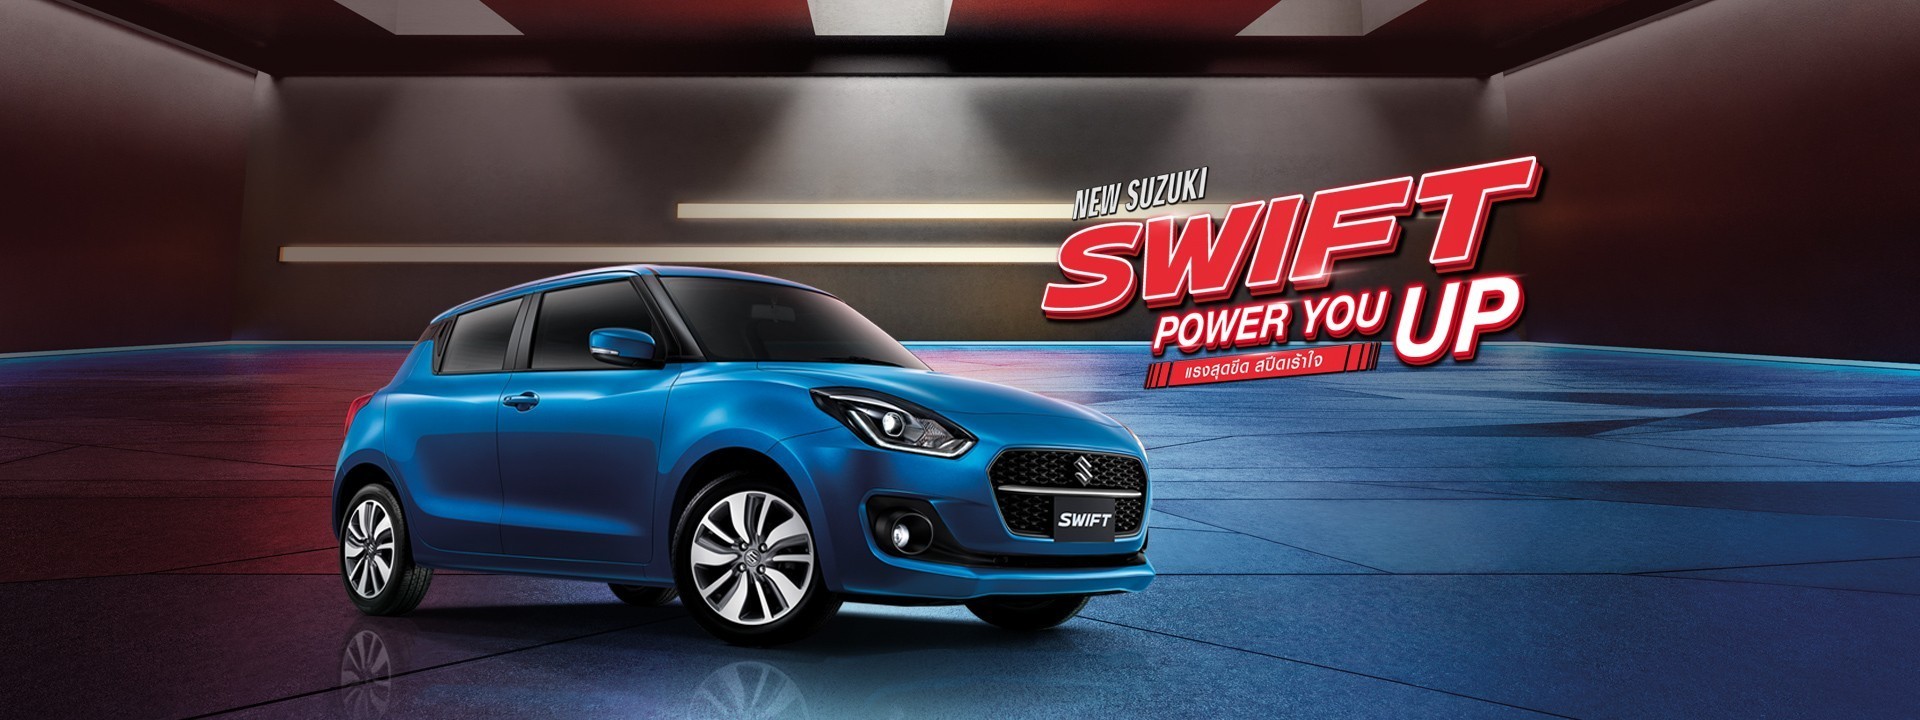 New Suzuki Swift Promotion